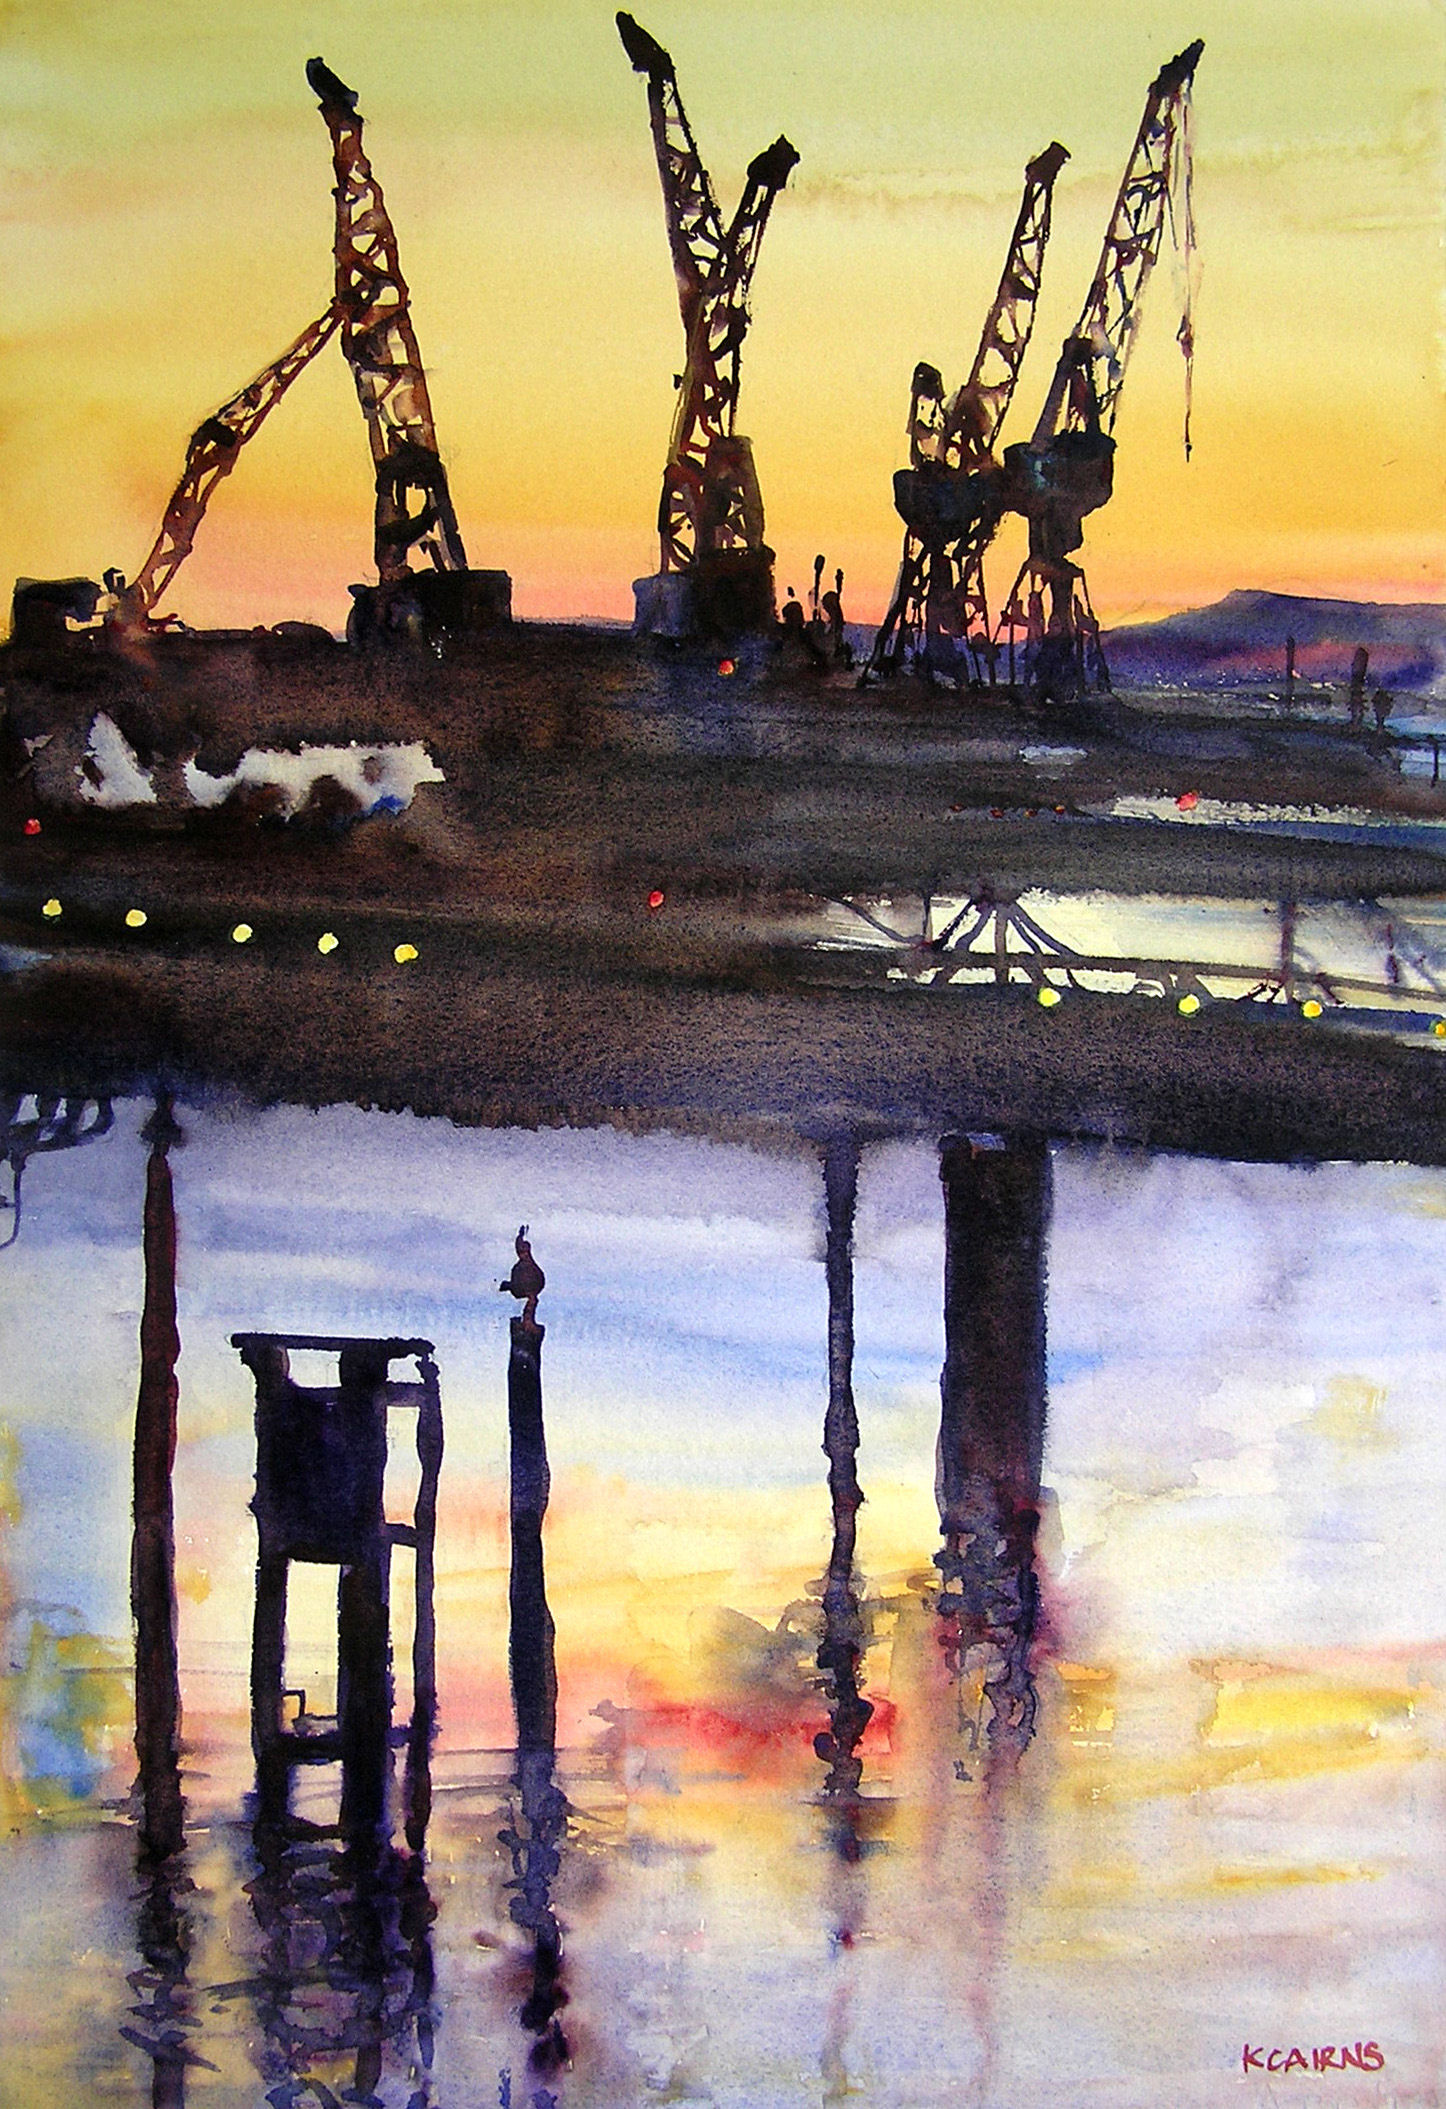 'Steel Giraffes at Sunset on the Clyde' by artist Karen Cairns